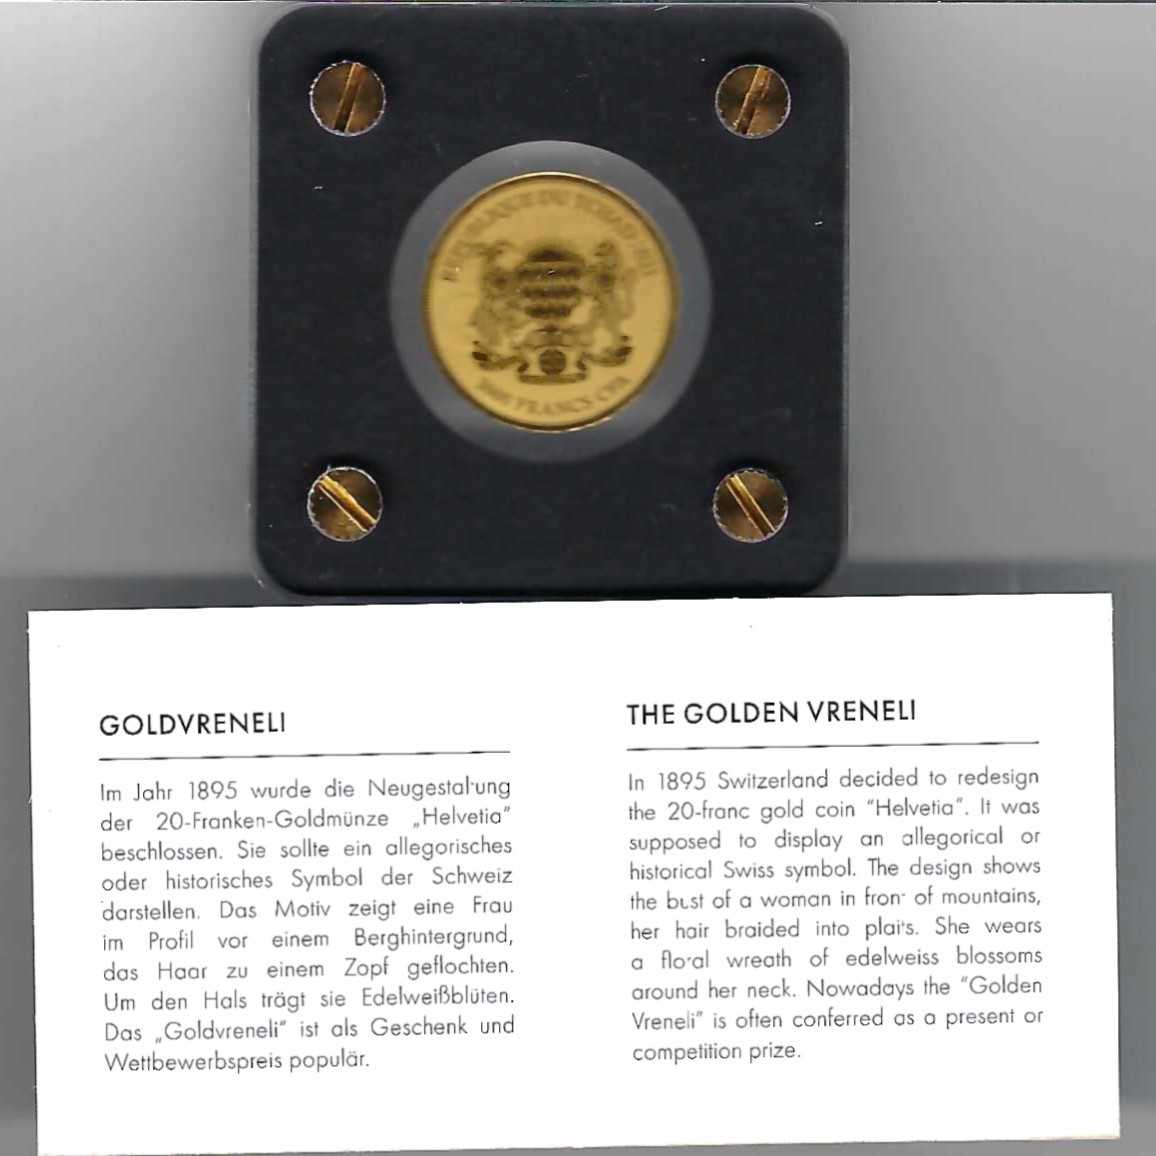  Goldbarren Tschad 3000 Francs 2021 Feingold 999 1/500 oz Golden Gate Koblenz Frank Maurer AB 740   